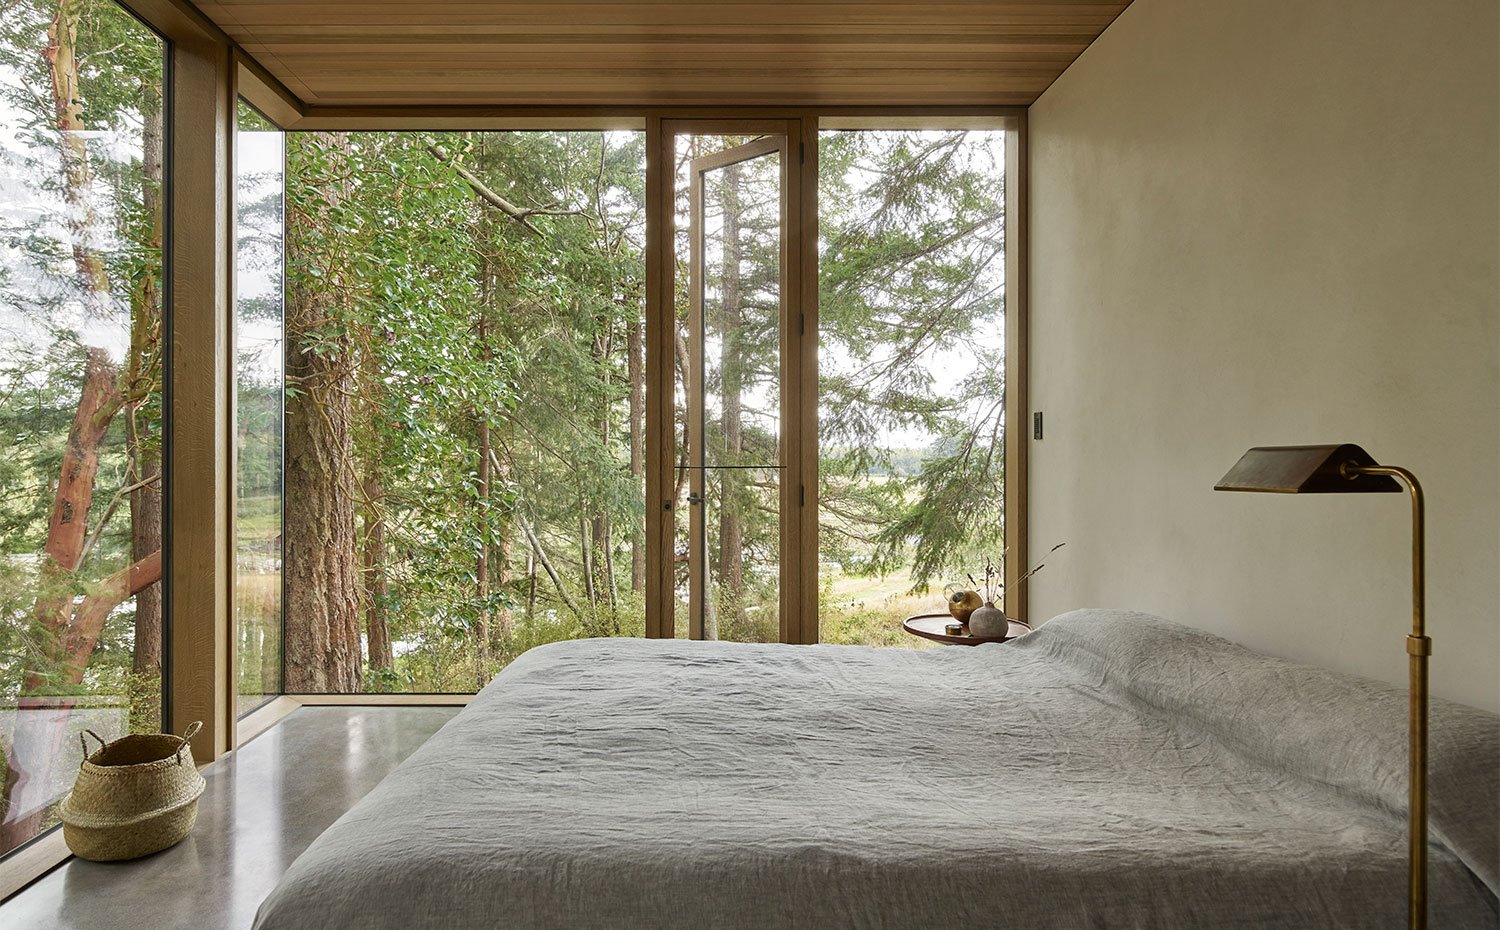 Dormitorio con techo y perfilería en madera, luminaria de pie en latón, cesto de mimbre y cerramiento acristalado